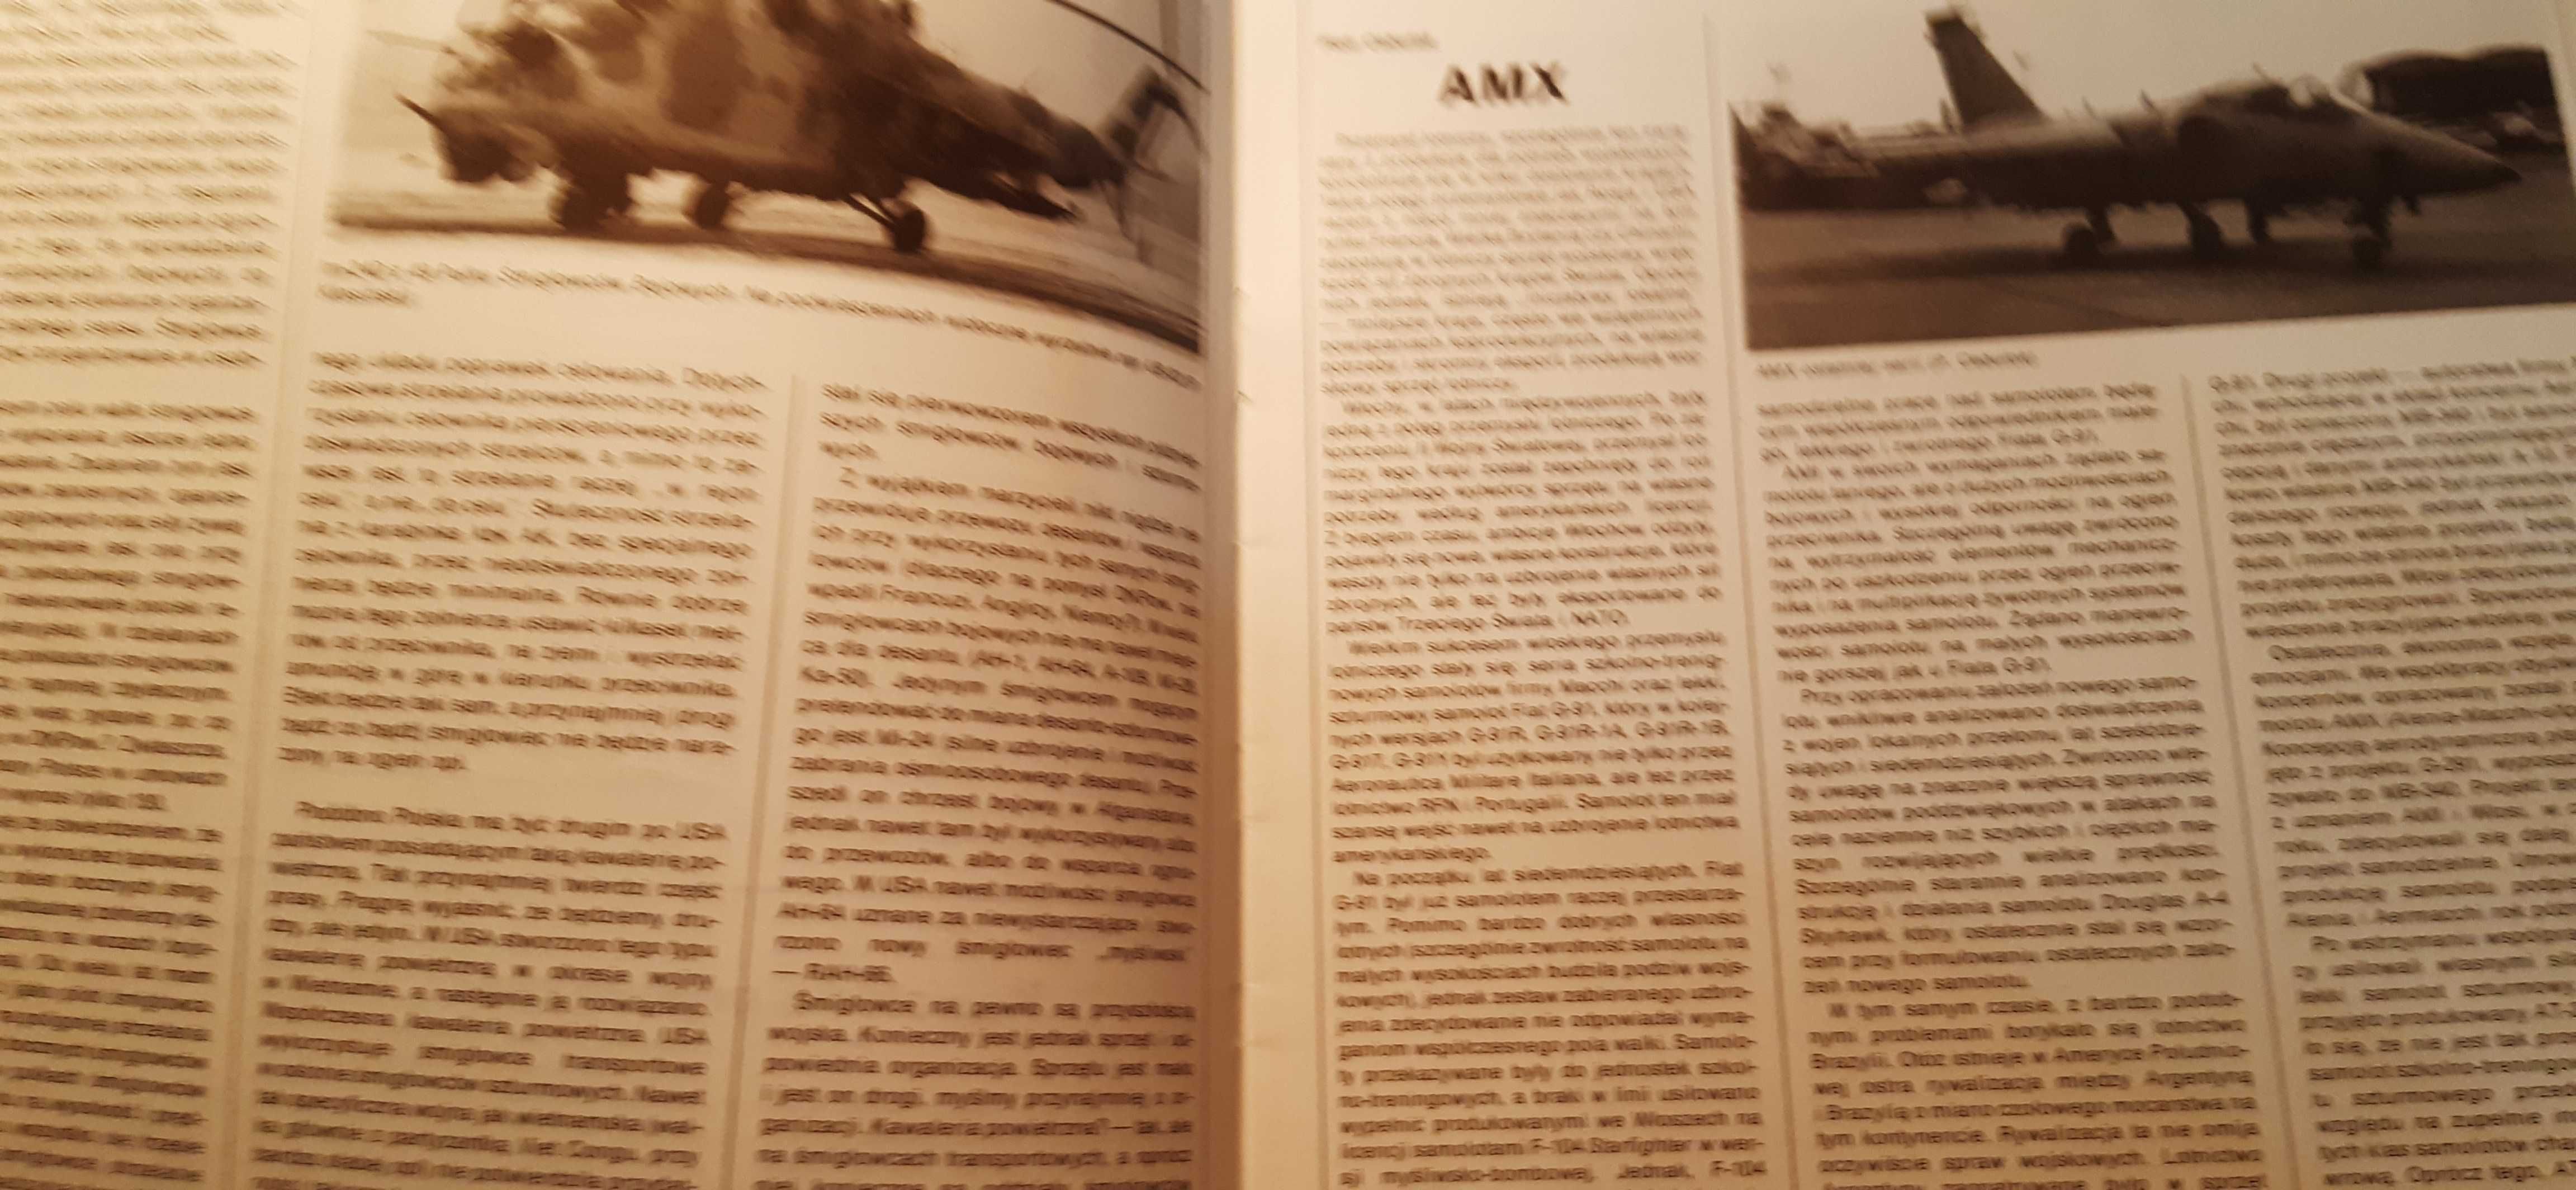 stare czasopismo technika wojskowa 1/1995